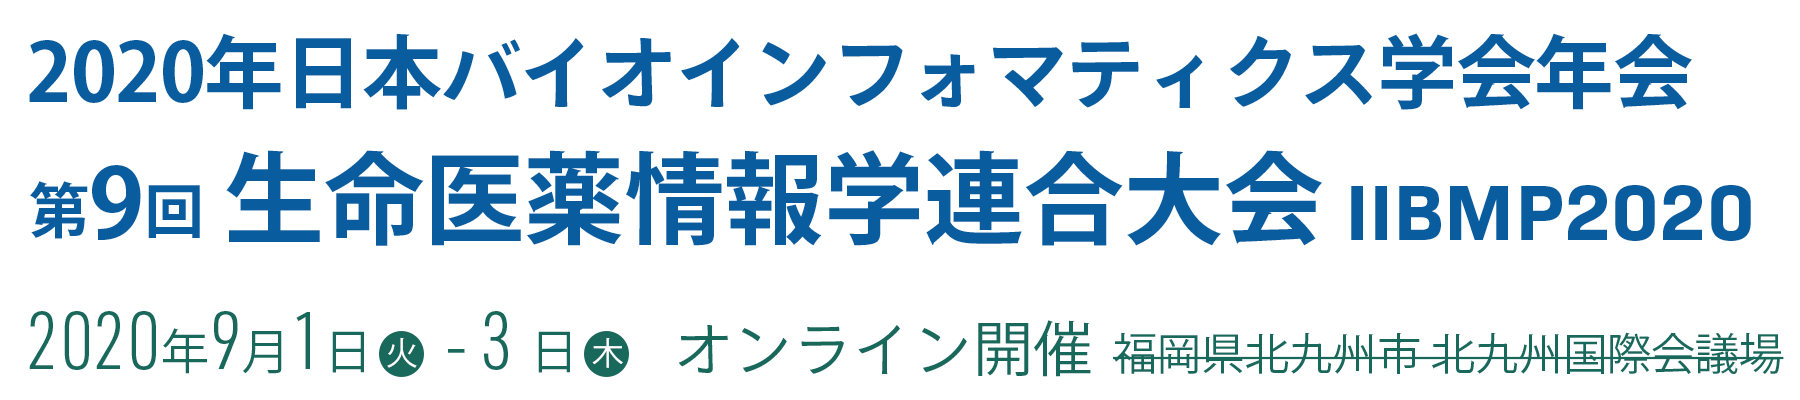 日本バイオインフォマティクス学会 2020年年会 第9回生命医薬情報学連合大会（IBMP2020）